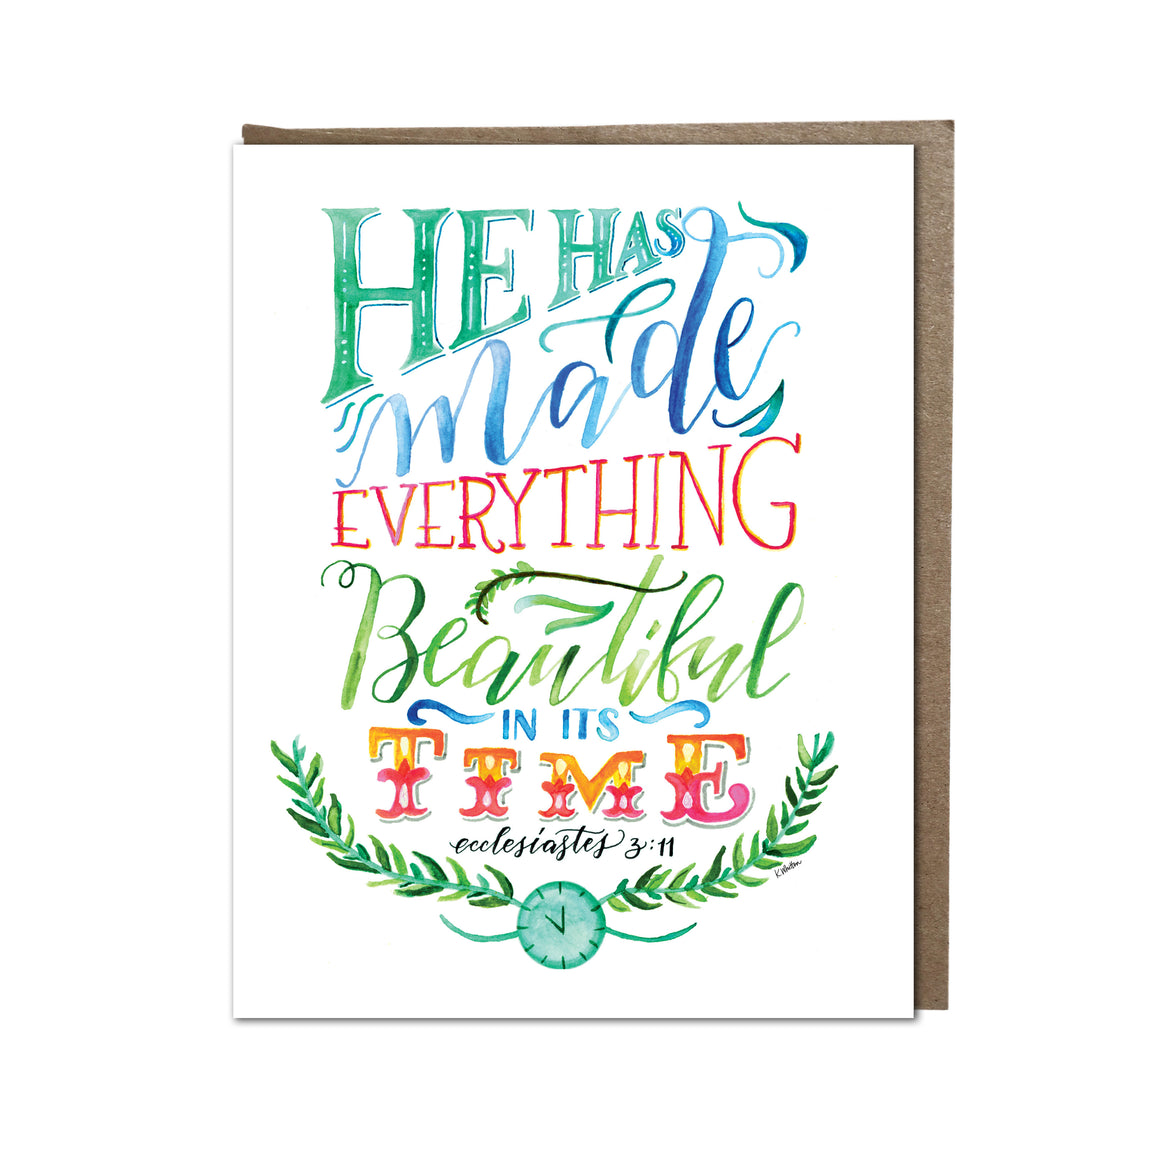 "Beautiful in Time" card